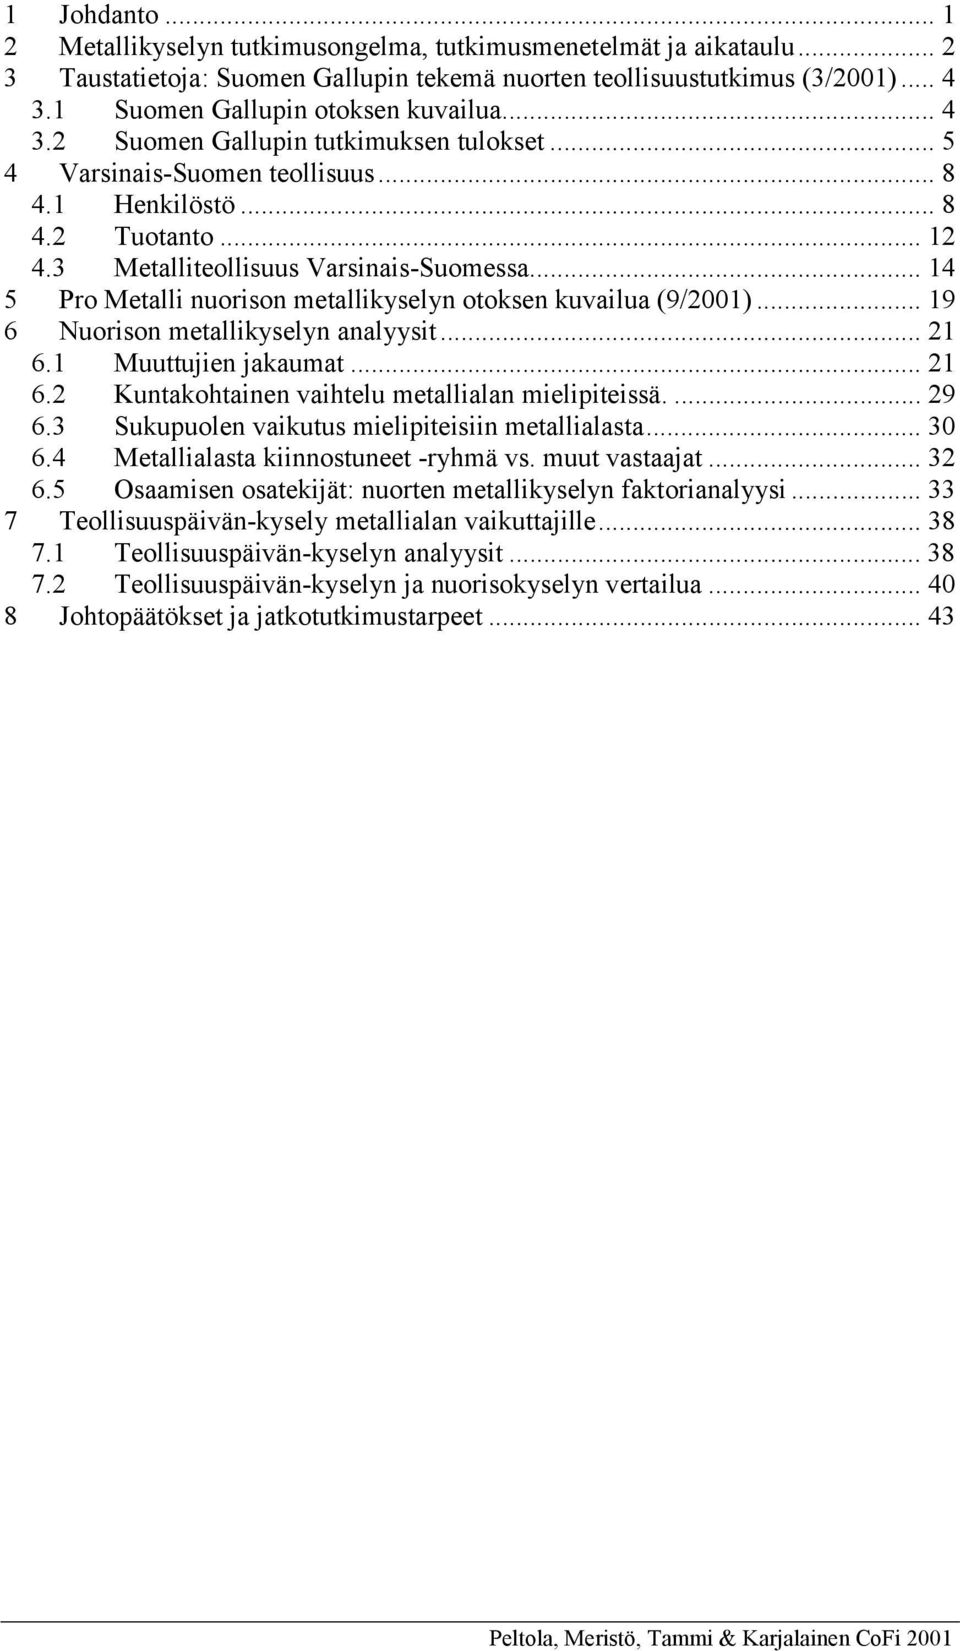 3 Metalliteollisuus Varsinais-Suomessa... 14 5 Pro Metalli nuorison metallikyselyn otoksen kuvailua (9/2001)... 19 6 Nuorison metallikyselyn analyysit... 21 6.